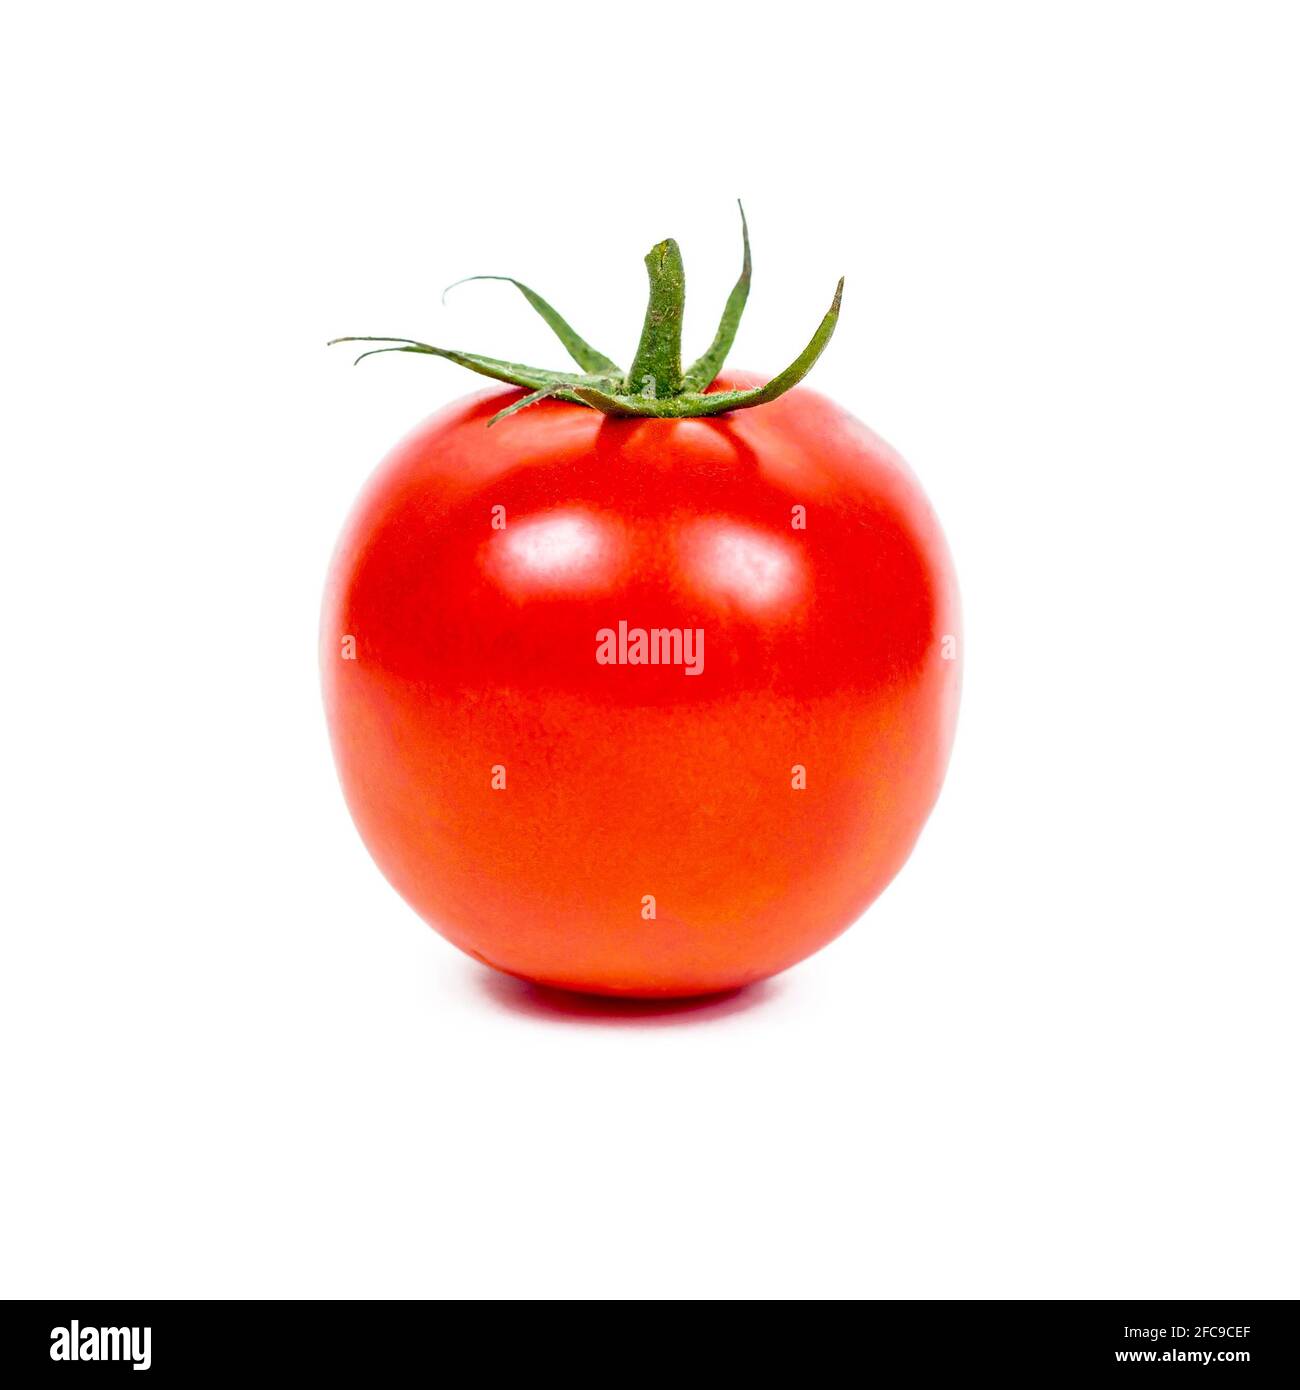 Fresh whole tomato isolated on white background. Stock Photo